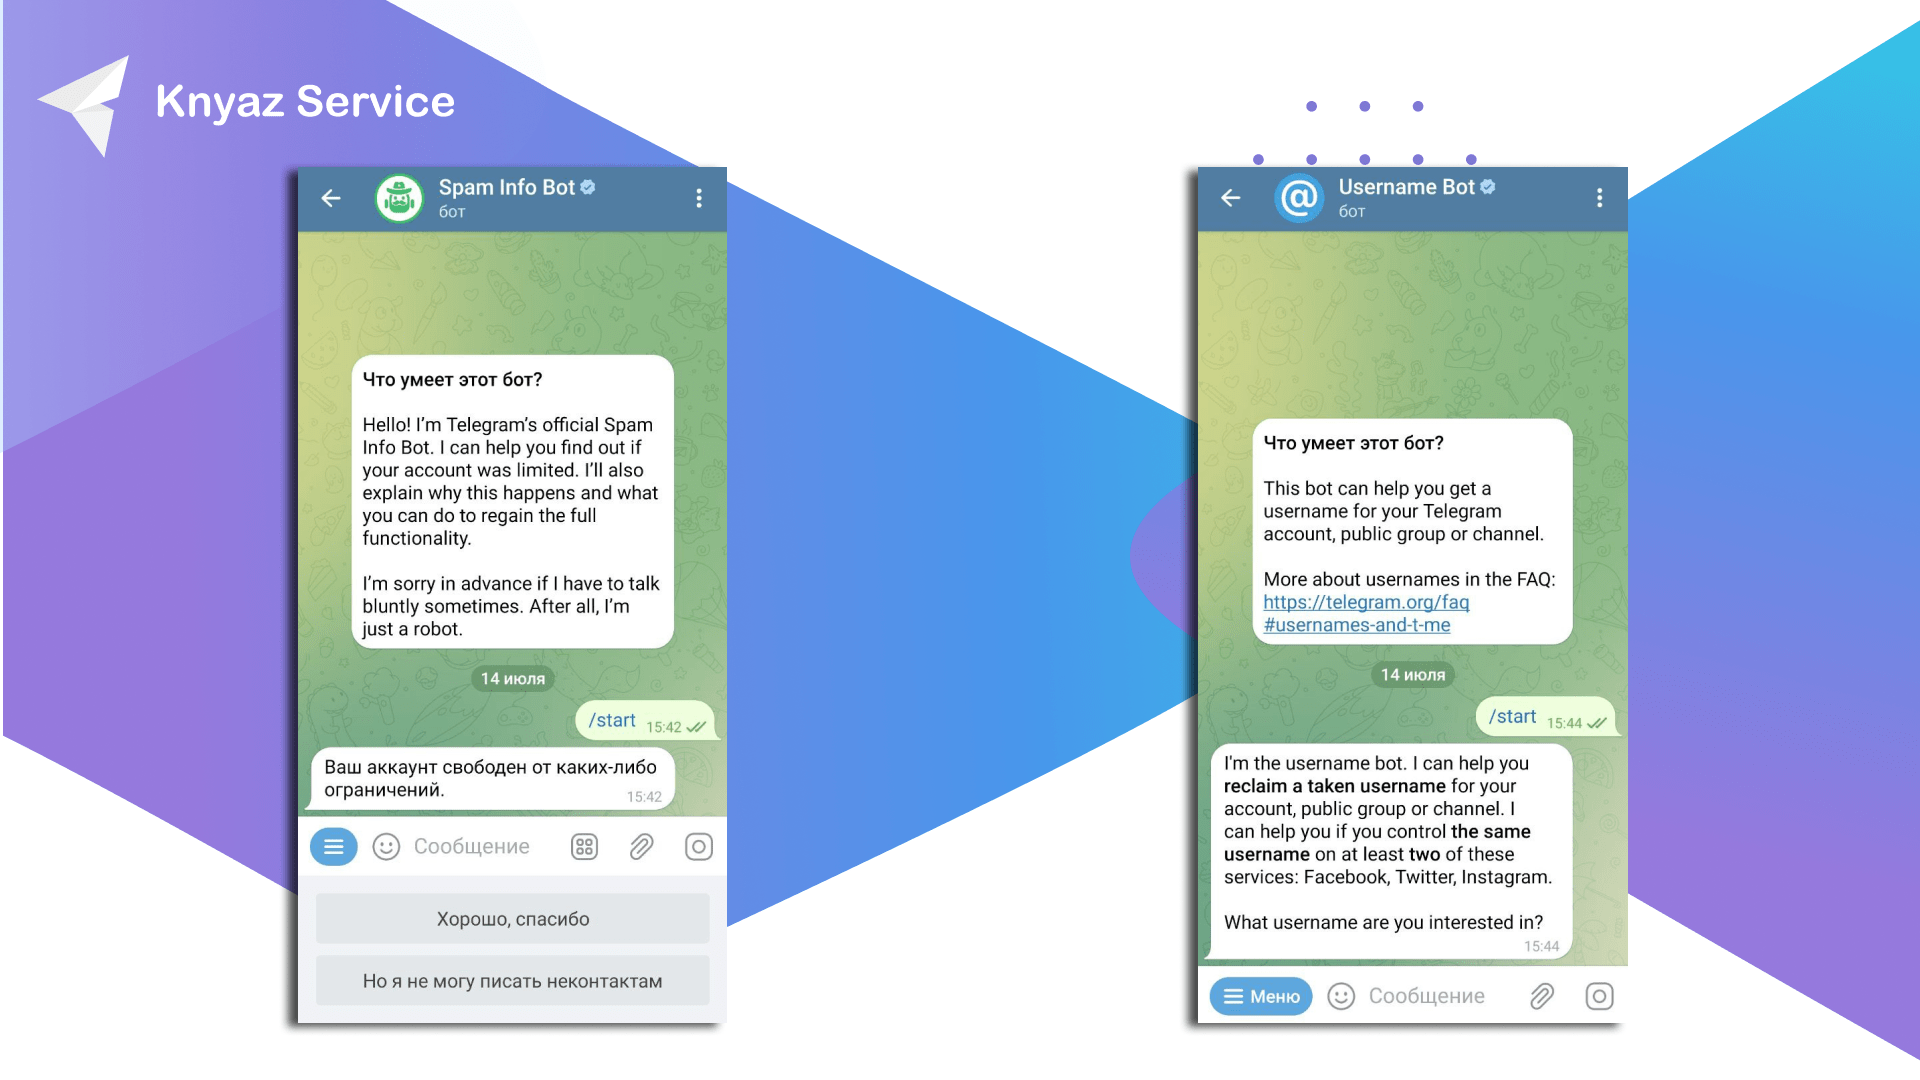 Обращение в службу поддержки Telegram через ботов